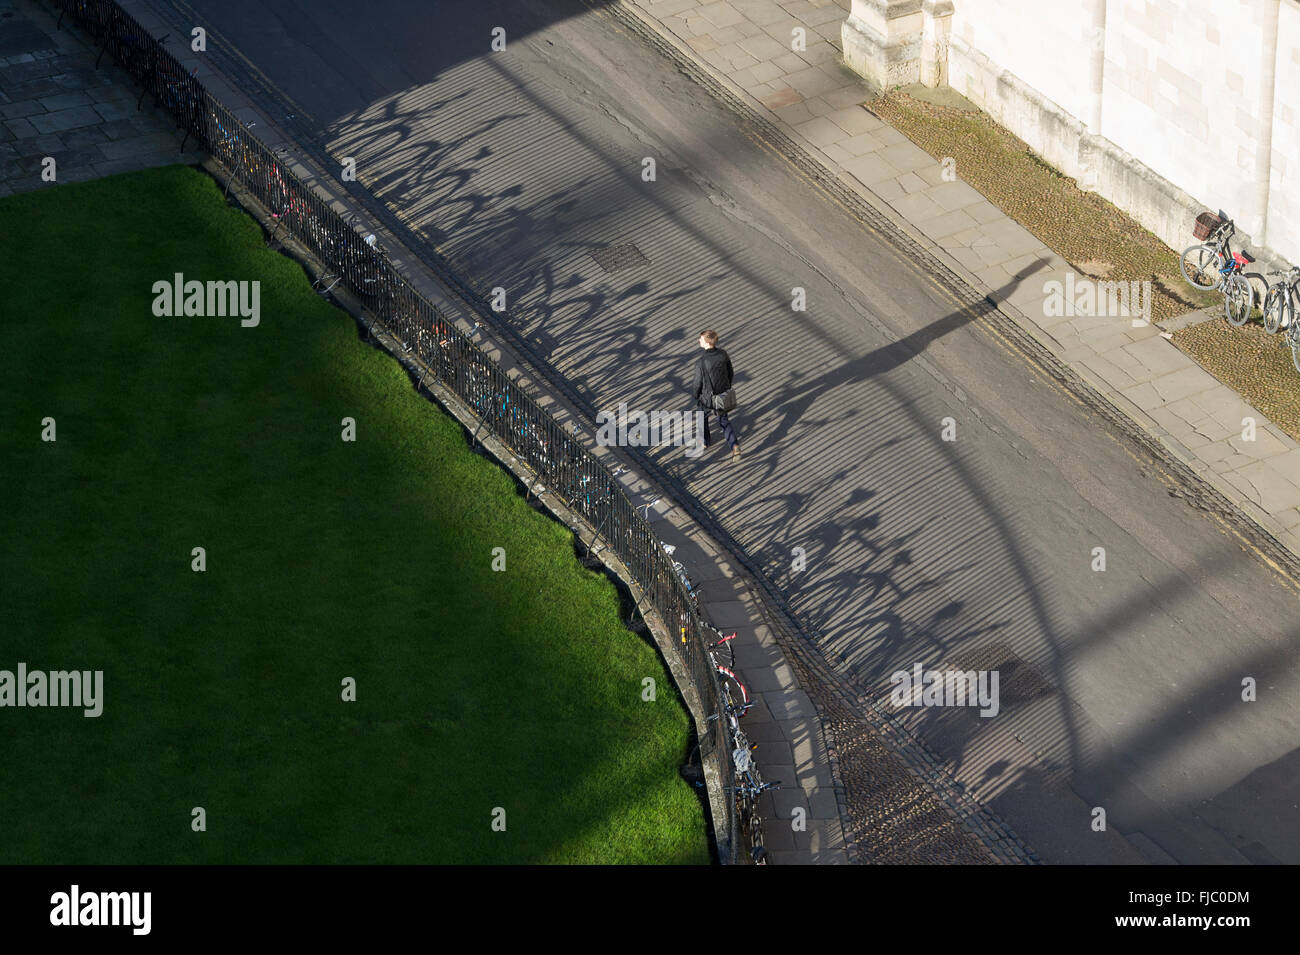 Schatten der Universität Studenten Fahrräder angekettet an Geländer außerhalb Radcliffe Camera mit und ein Student zu Fuß. Oxford University Press; England Stockfoto